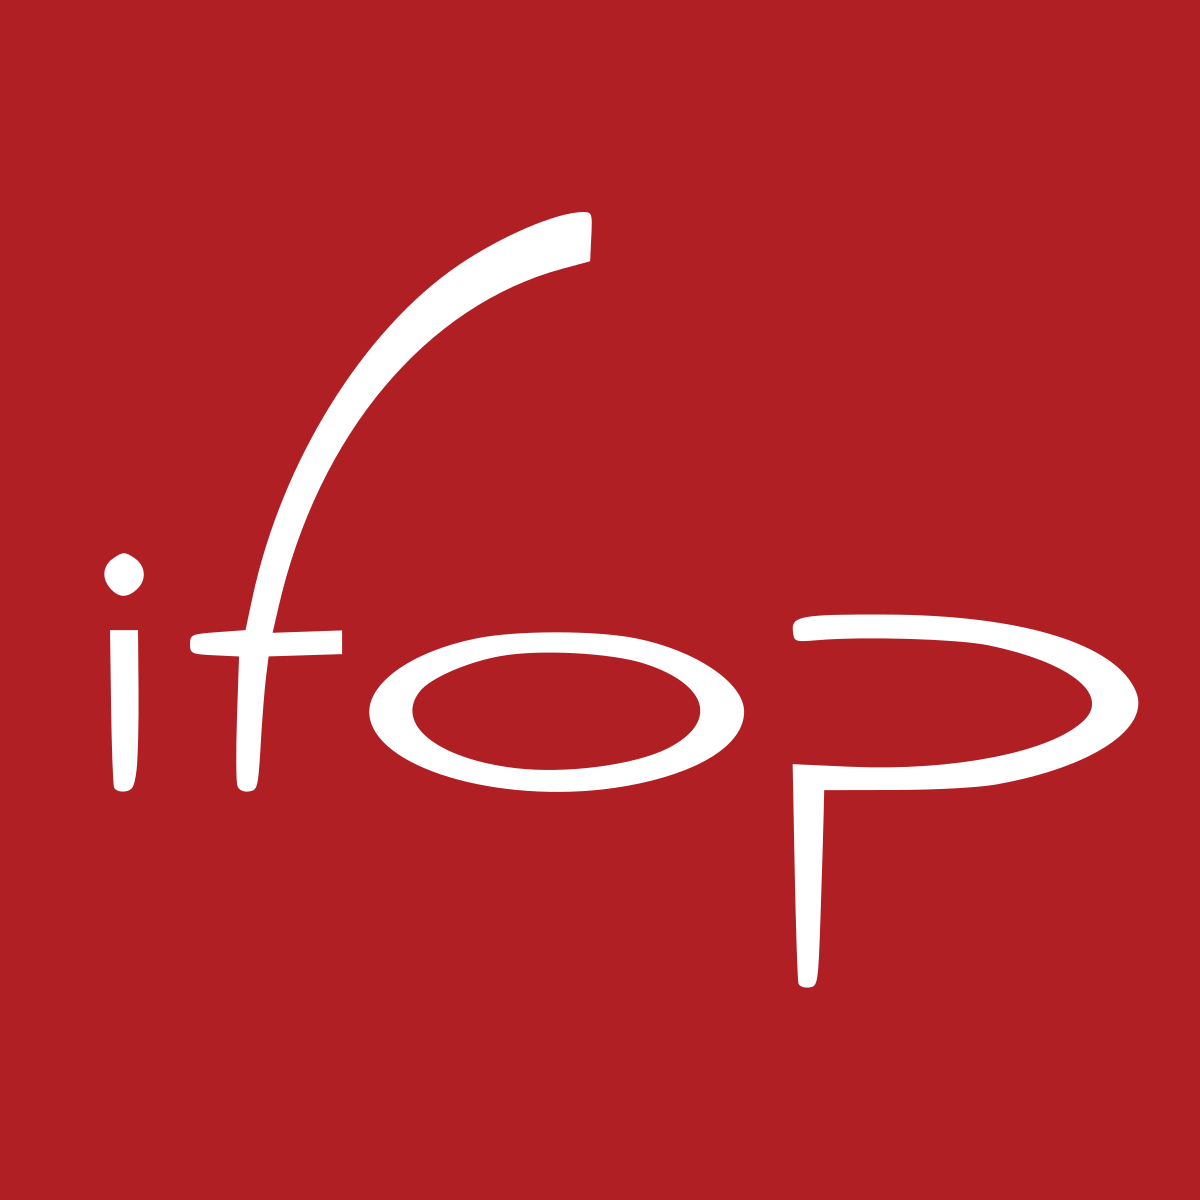 Logo de lInstitut français dopinion publique IFOP